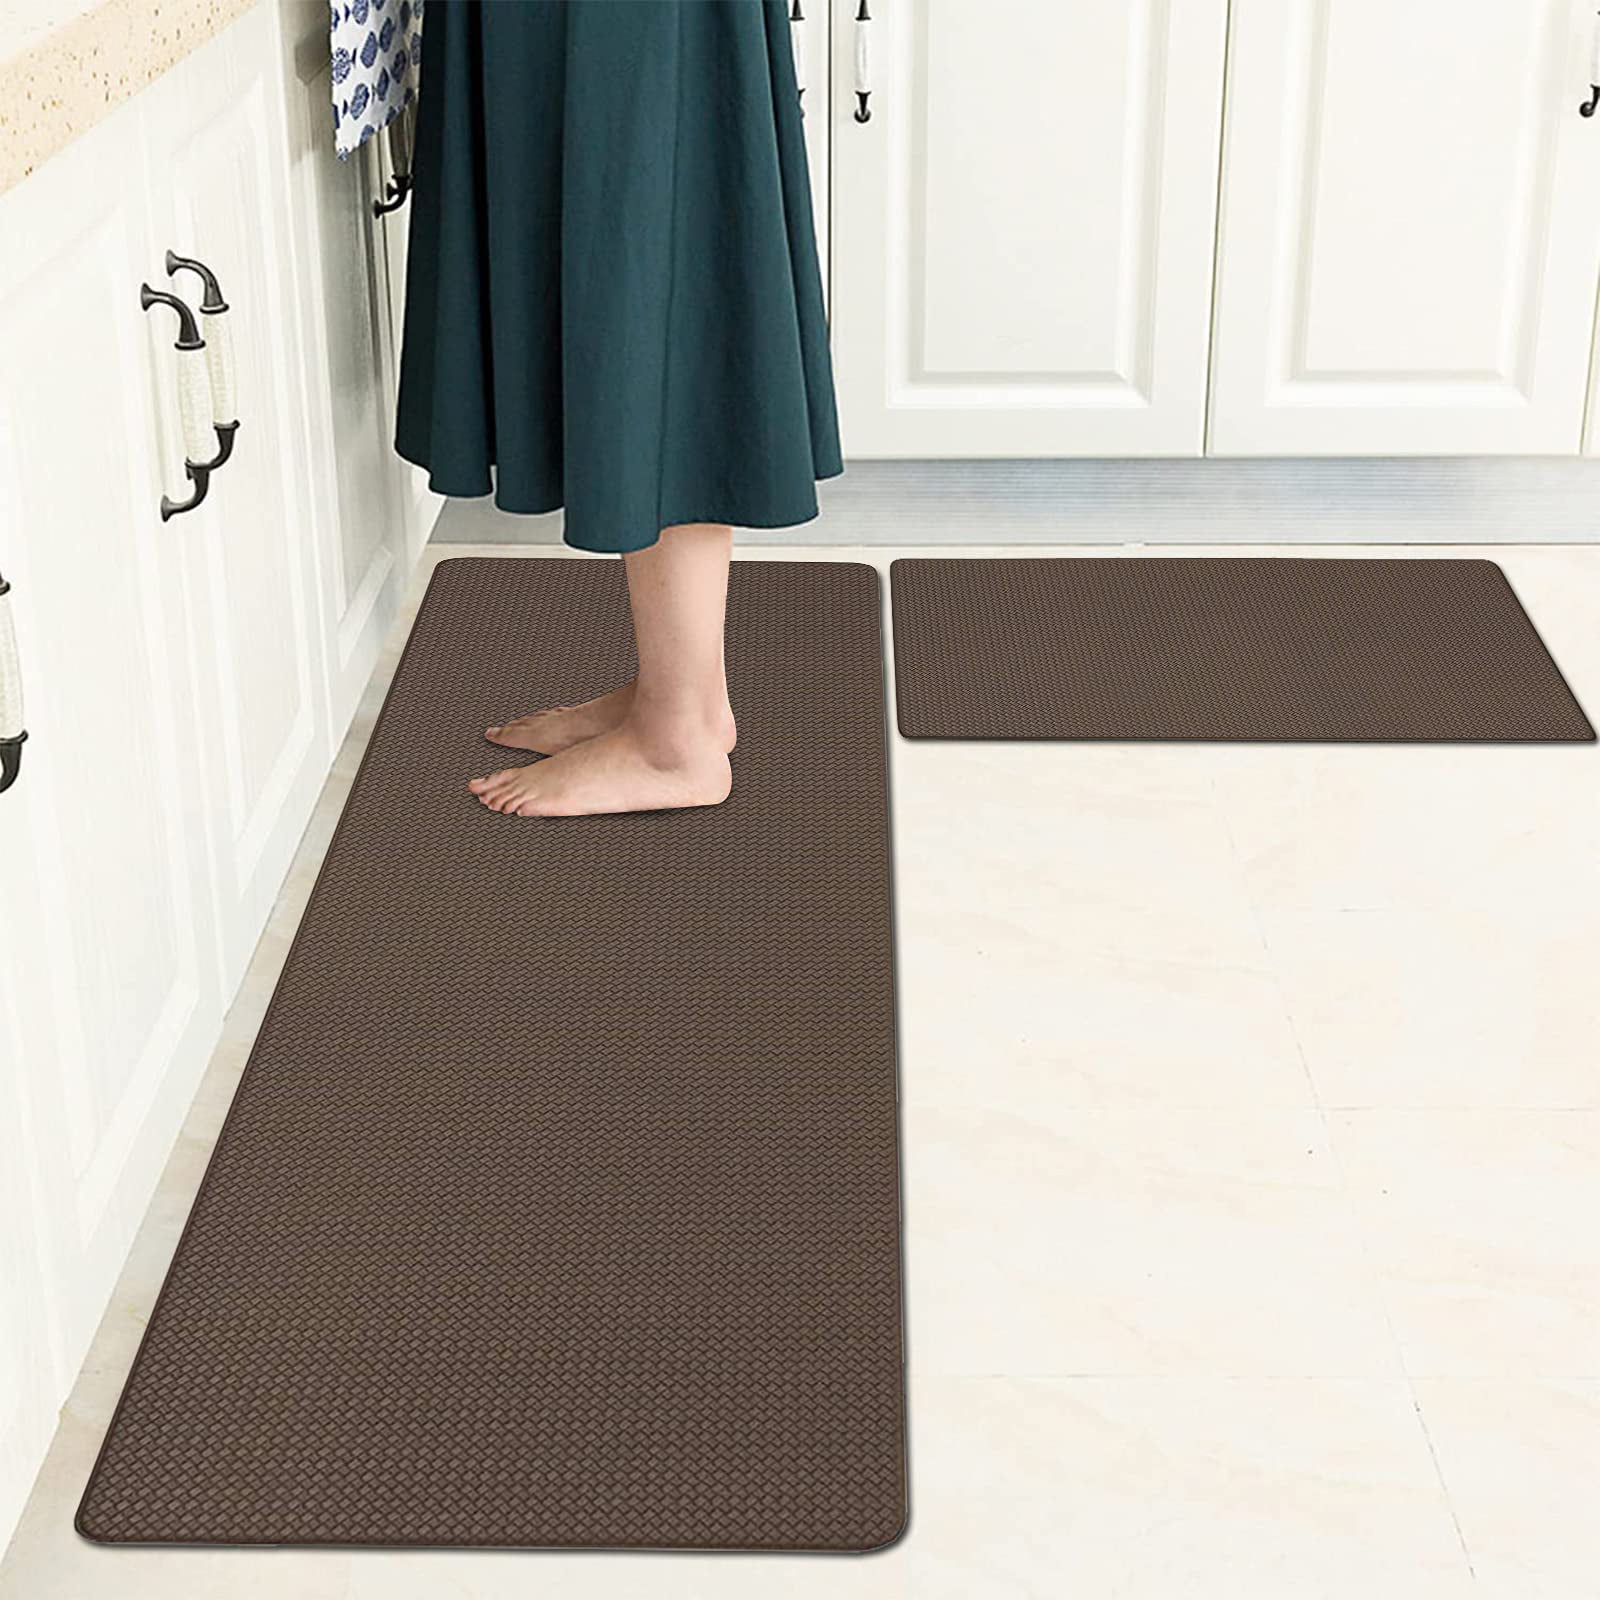 Pauwer Anti Fatigue Kitchen Rug Set 2 Piece Non Slip Cushioned Kitchen Floor Mat 